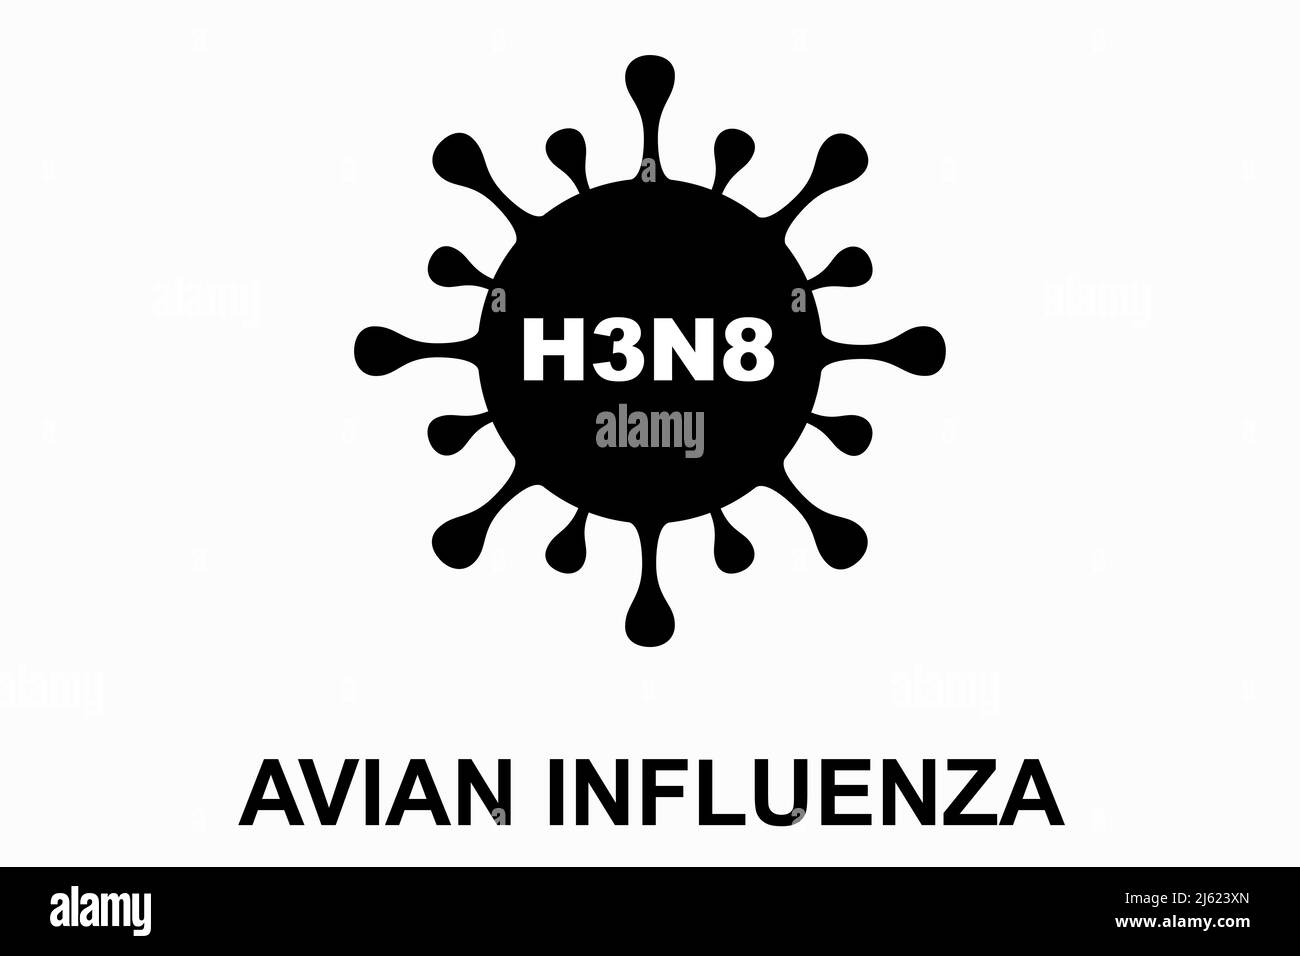 Influenza aviaria (H3N8). Casi umani di denuncia aviaria H3N8. Illustrazione del virus dell'influenza aviaria. H5N1 malattia epidemica di influenza aviaria. Pericolo pandemico cinese. Foto Stock